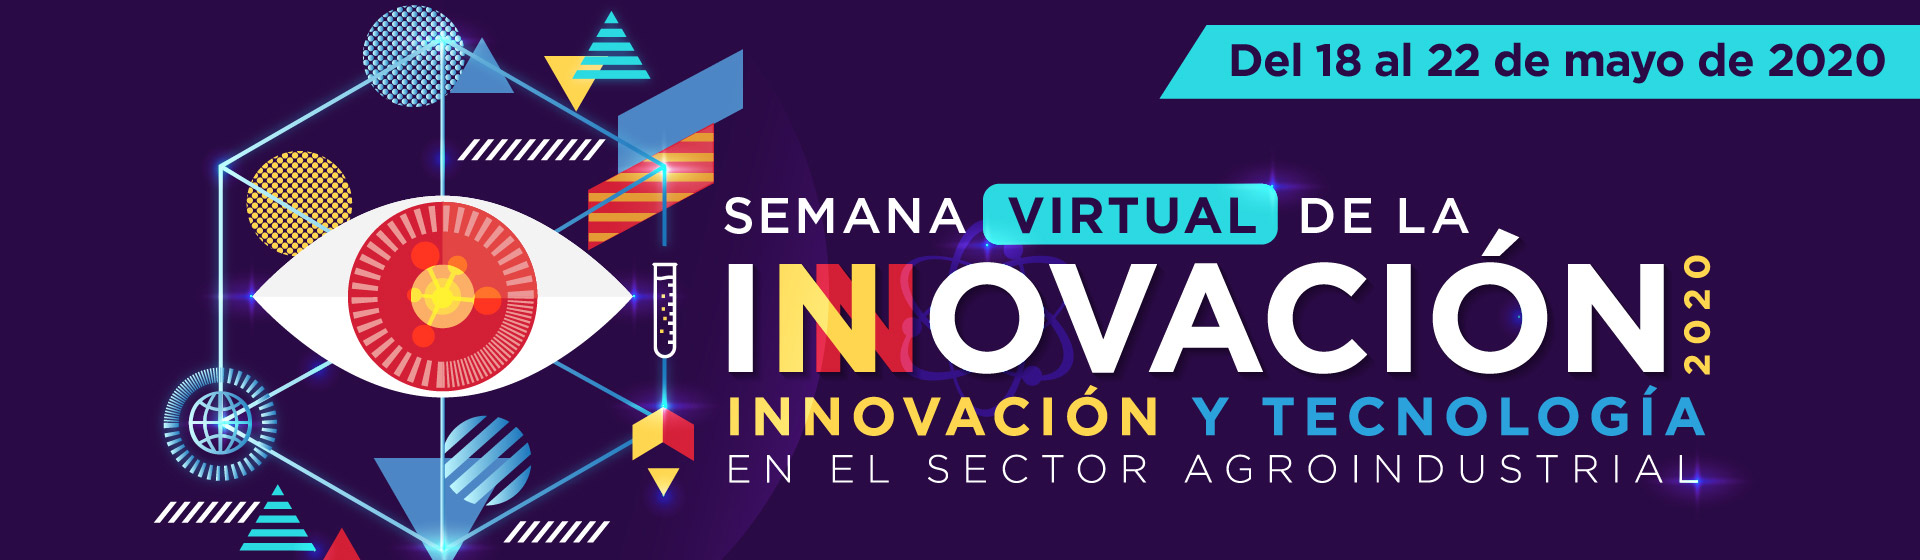 Semana virtual de la innovaciòn 2020 Uniandes